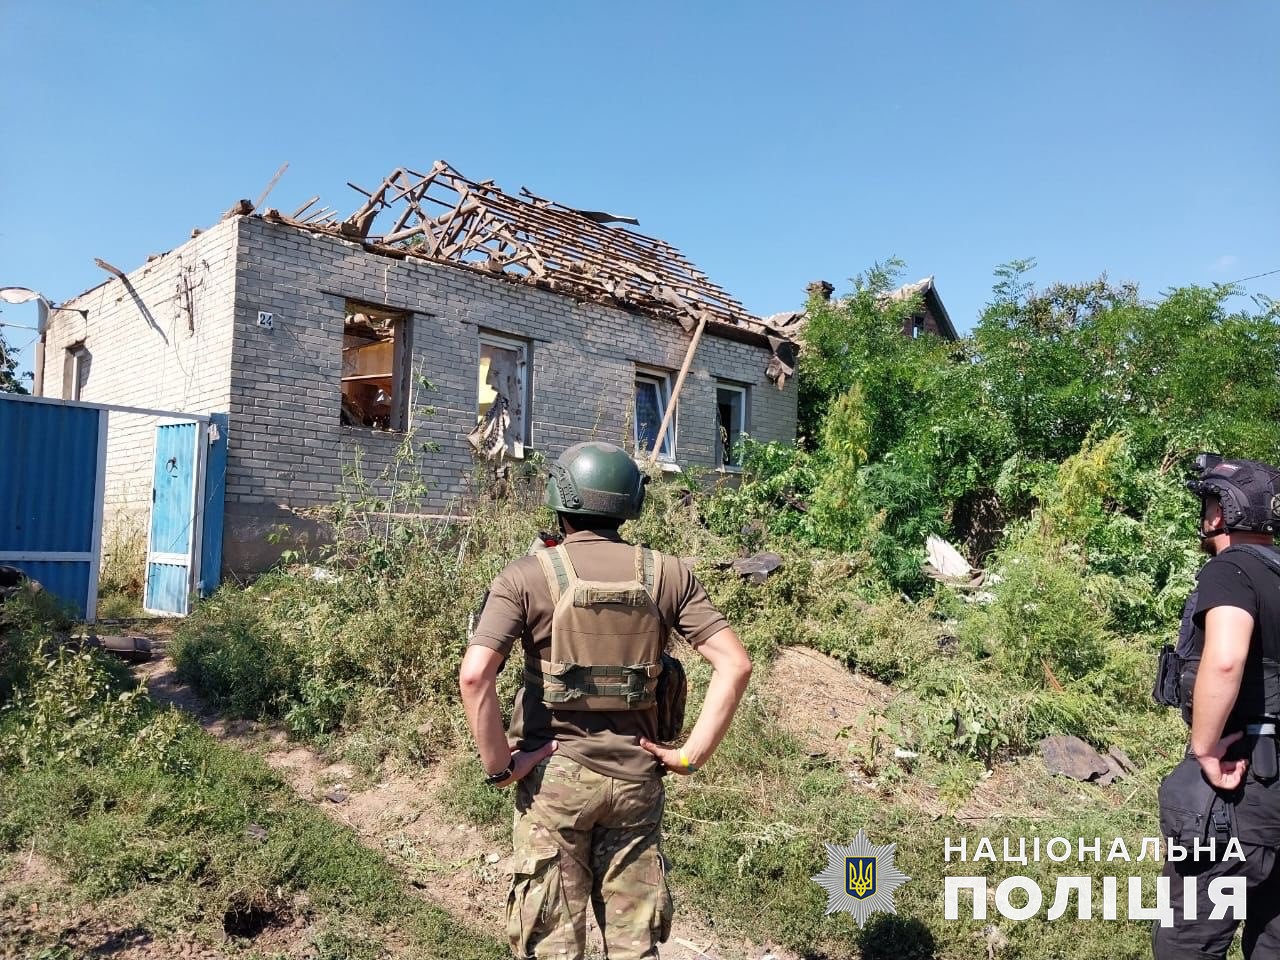 Приватний будинок, який зруйнували росіяни 15 серпня